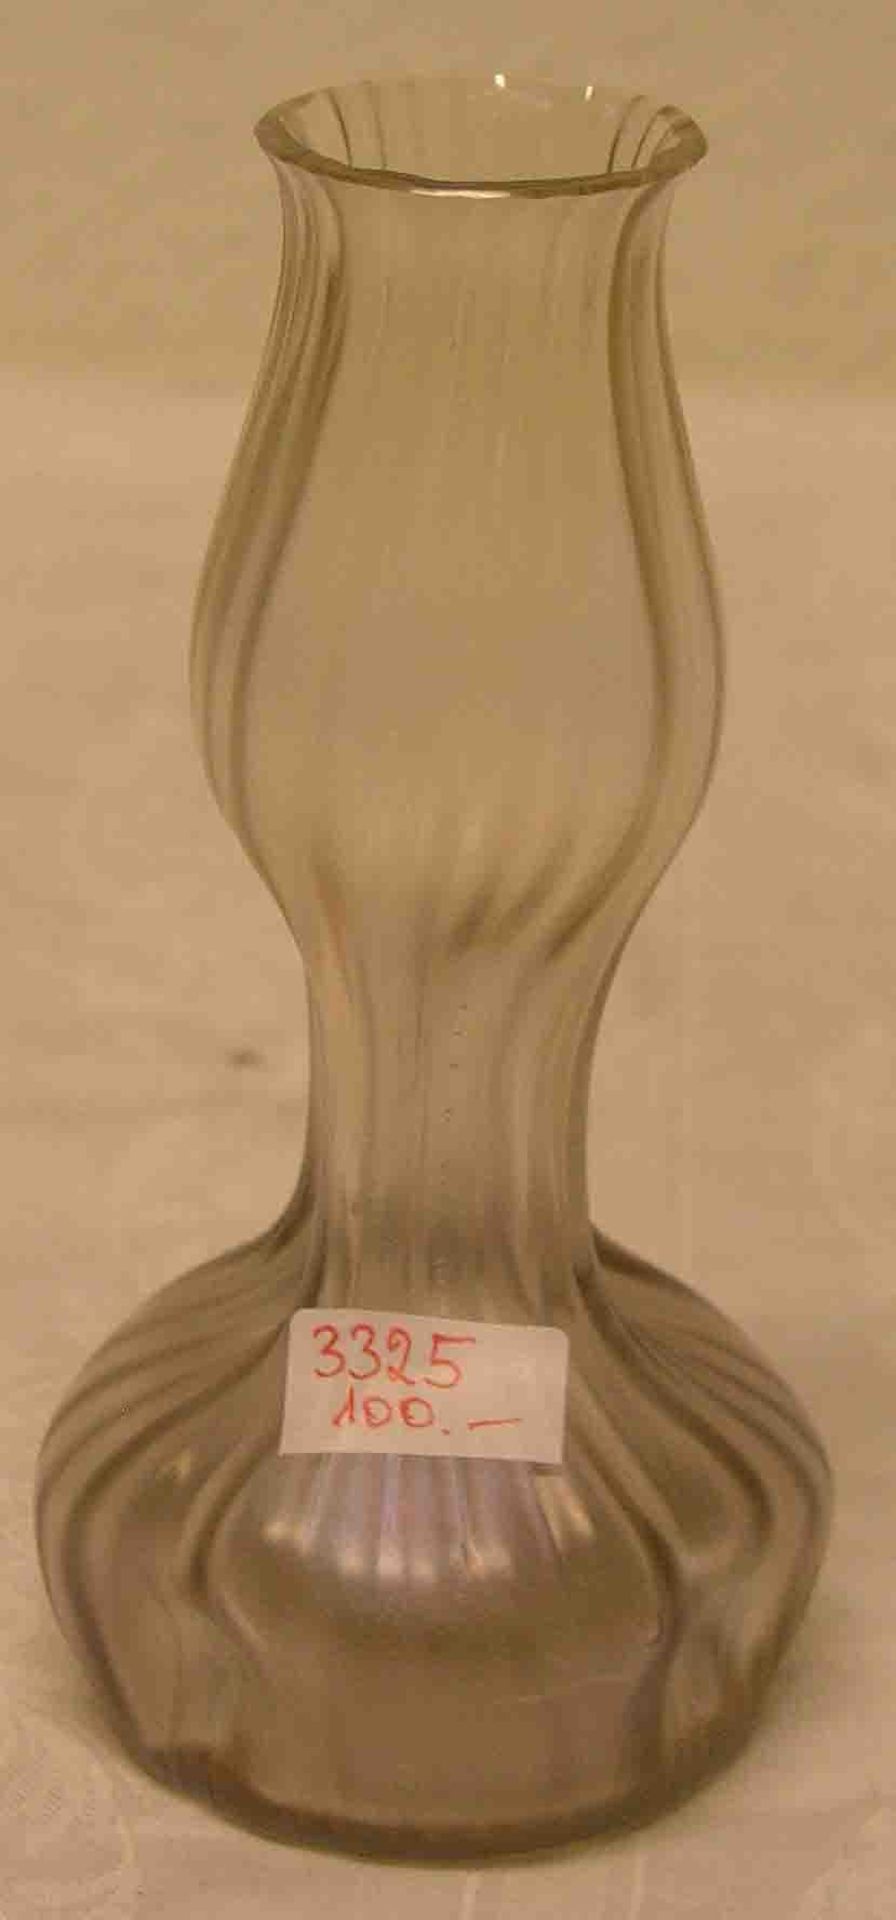 Jugendstil Vase, Lötz, um 1910. Manganfarbenes, irisierendes, klares Glas, längsoptisch,über dem